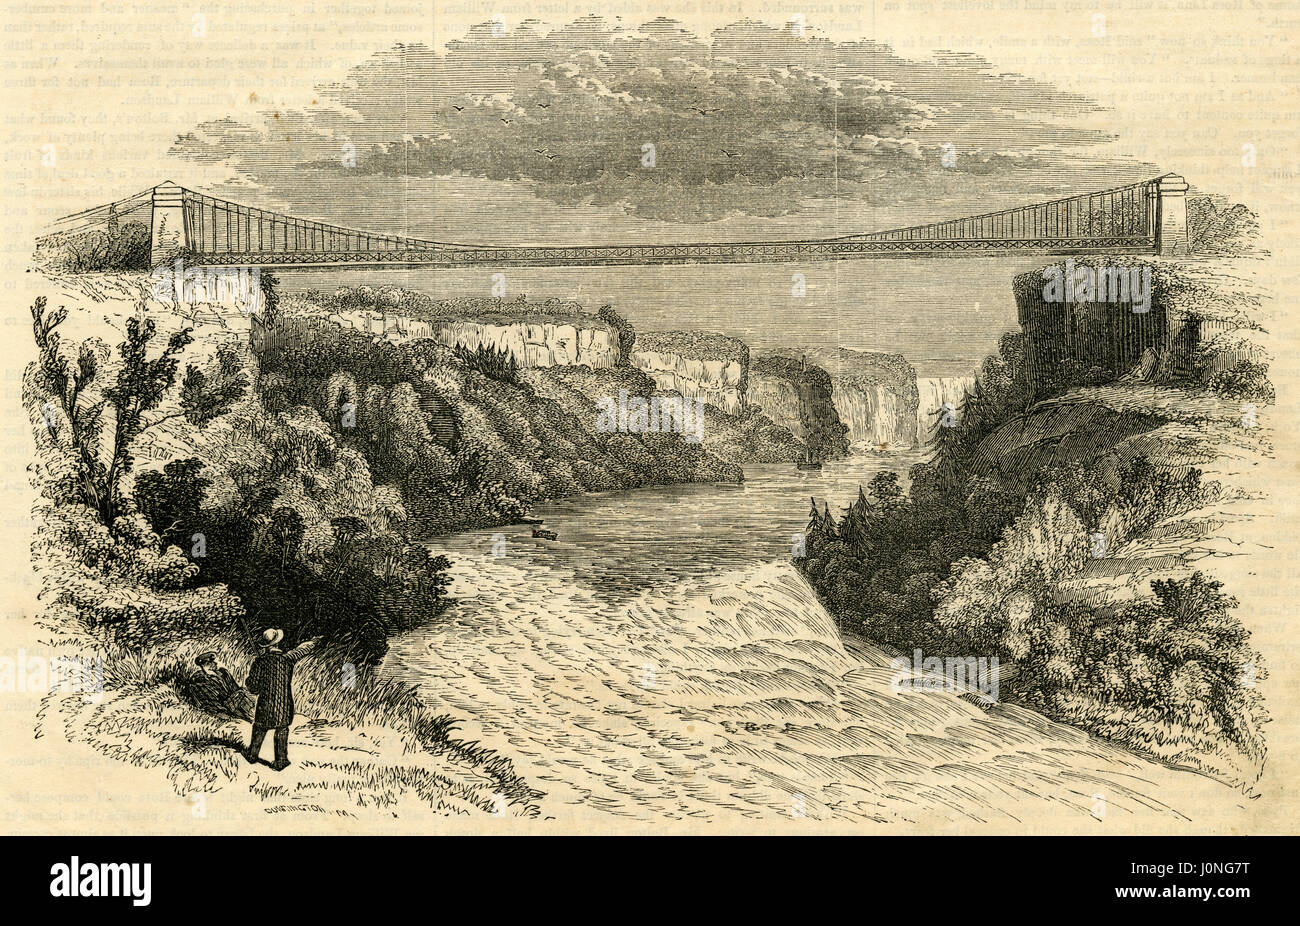 Antiken 1854 Gravur, "Blick auf die Hängebrücke, Niagara." Die Niagara Falls Hängebrücke, die über den Niagara River aus dem Jahr 1855 bis 1897 stand, war der weltweit erste arbeiten Eisenbahn Hängebrücke. Es überspannt 825 Füße (251 m) und Stand 2,5 Meilen (4,0 km) stromabwärts von Niagara Falls, wo es nach Niagara Falls, New York Niagara Falls, Ontario, verbunden. QUELLE: ORIGINAL GRAVUR. Stockfoto